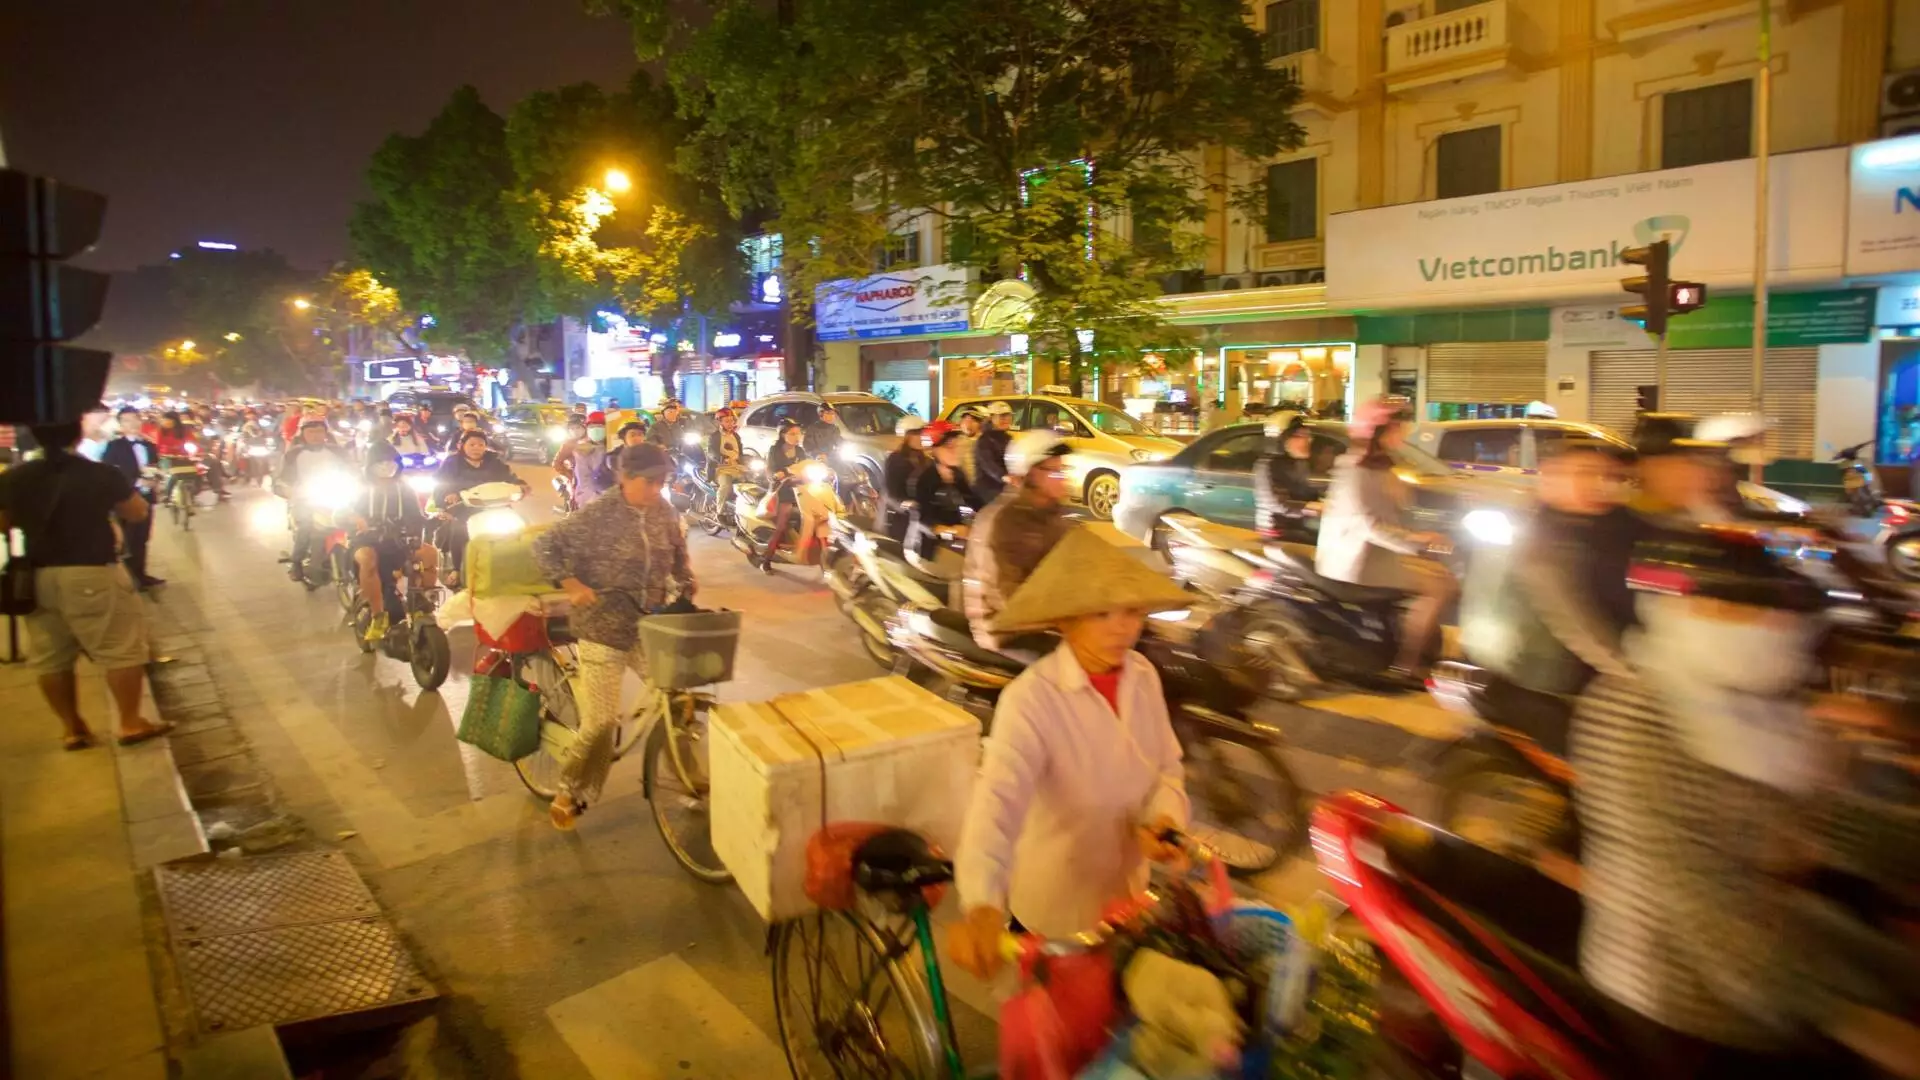 Hanoi Old Quarter On Hanoi In Vietnam